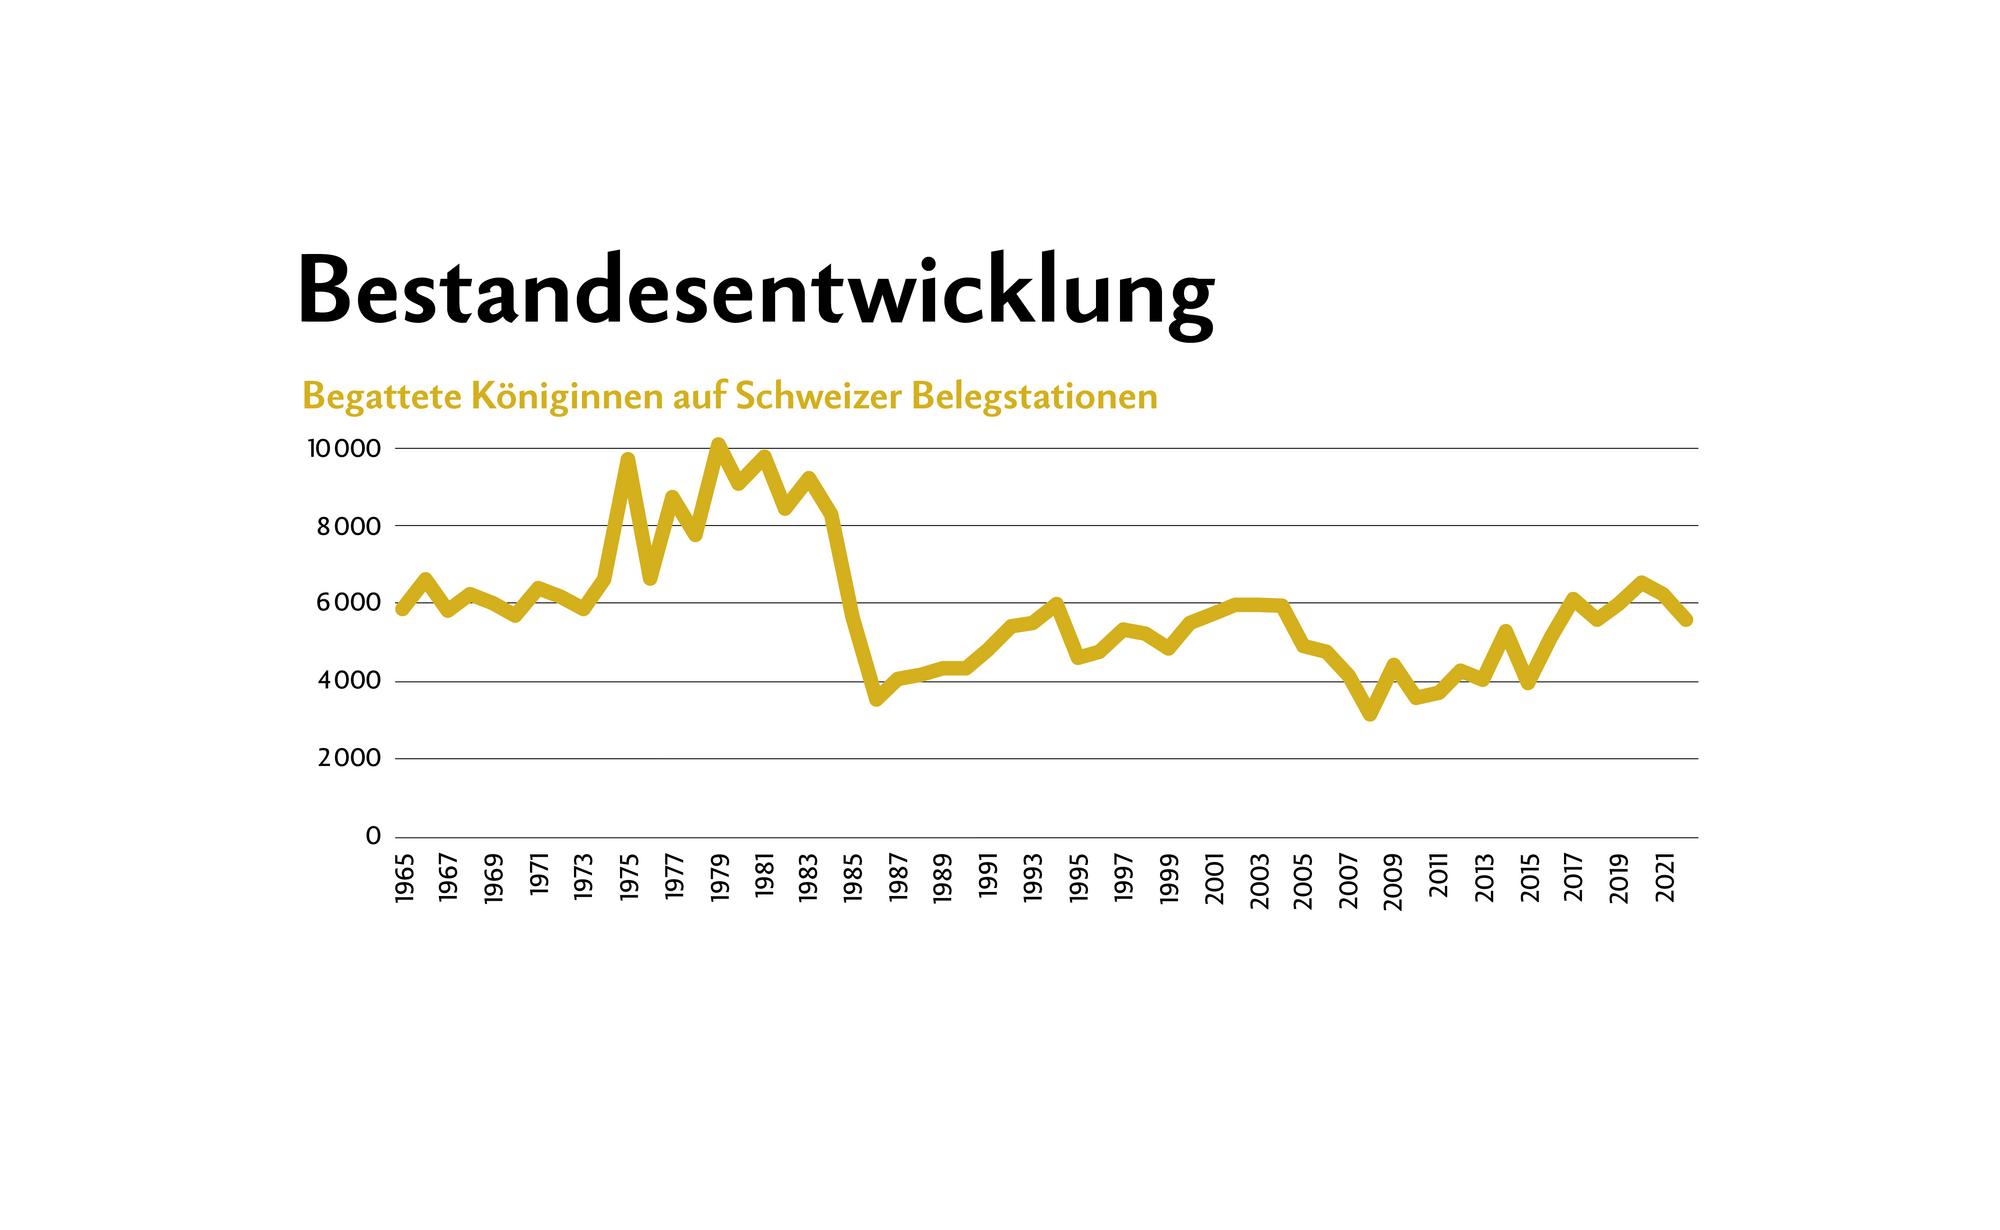 Grafik zeigt die Entwicklung der begatteten Königinnen auf Schweizer Belegstationen, zwischen 1965 und 2021.